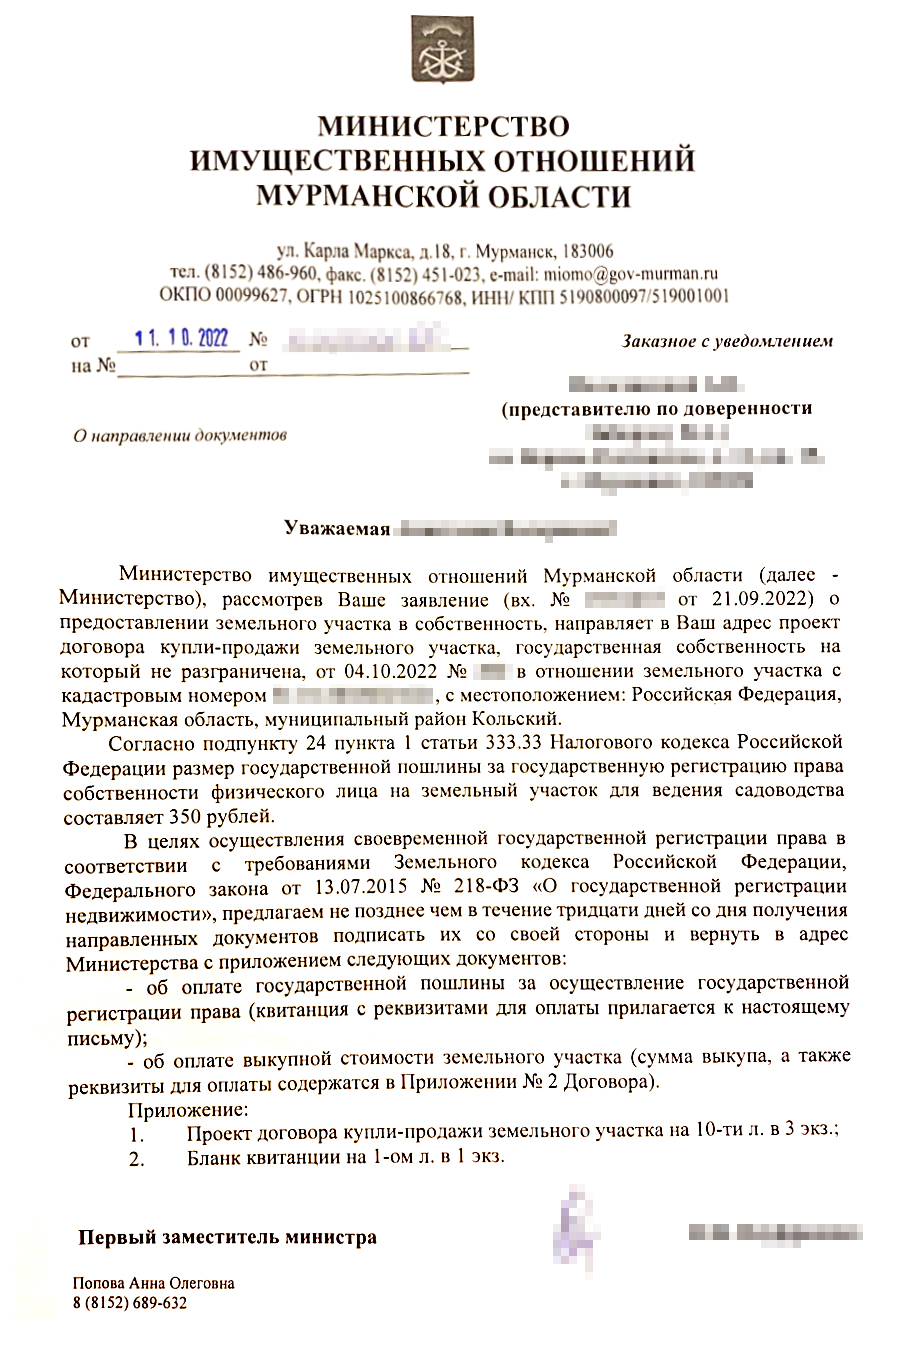 Извещение от министерства имущественных отношений Мурманской области о подготовке проекта договора купли-продажи участка